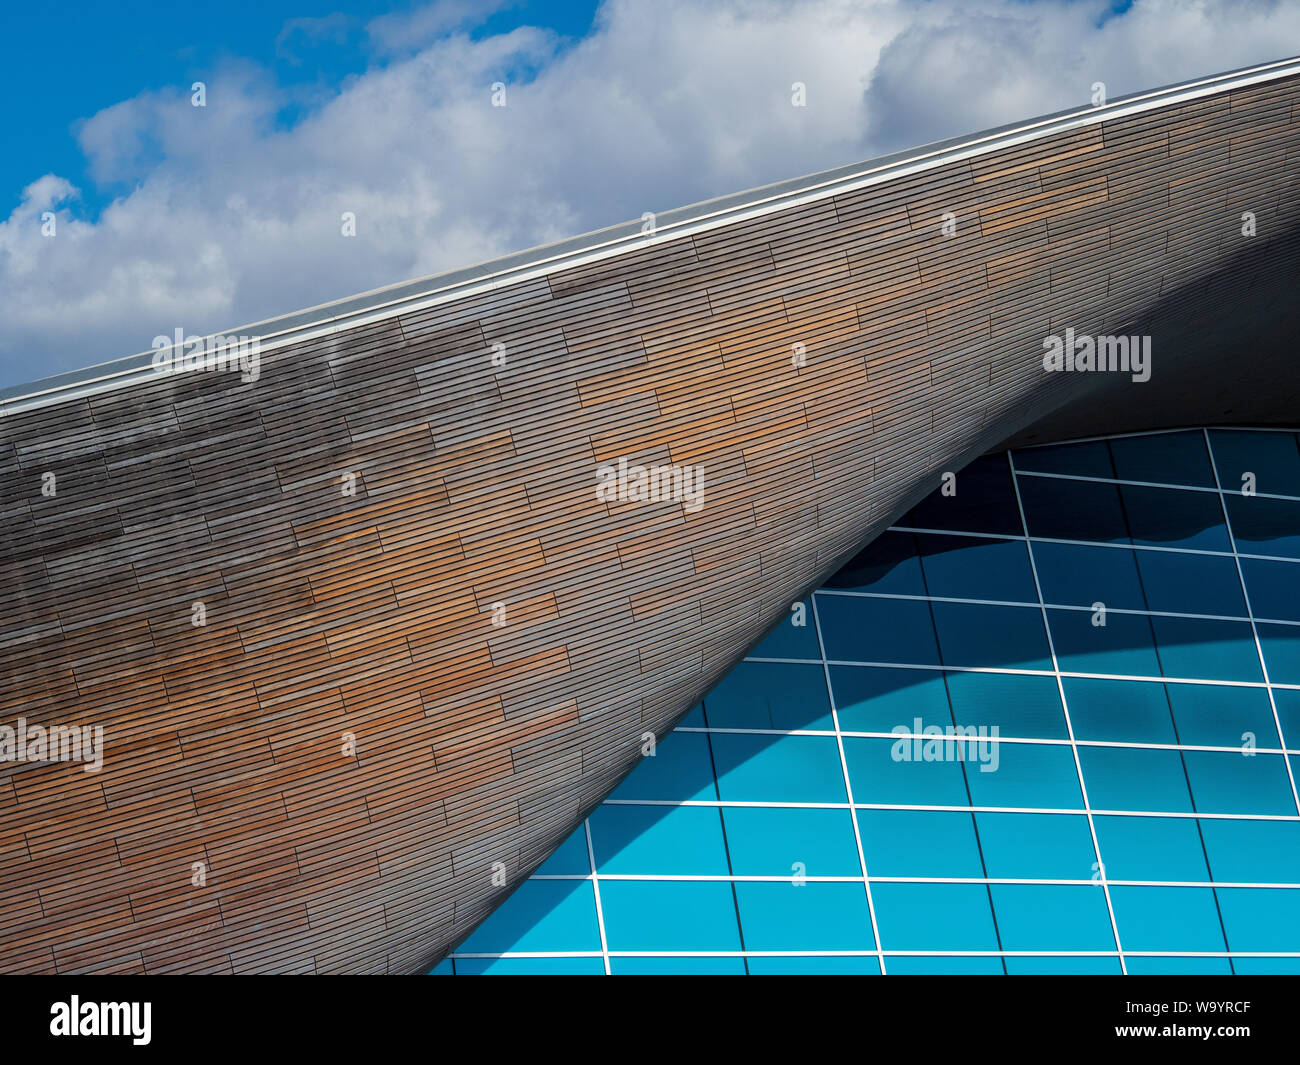 London Aquatics Centre detalles de diseño - Olimpíadas Piscinas para las Olimpiadas 2012 - Diseño Zaha Hadid Architects. Compl. 2011, cuesta £269 millones. Foto de stock